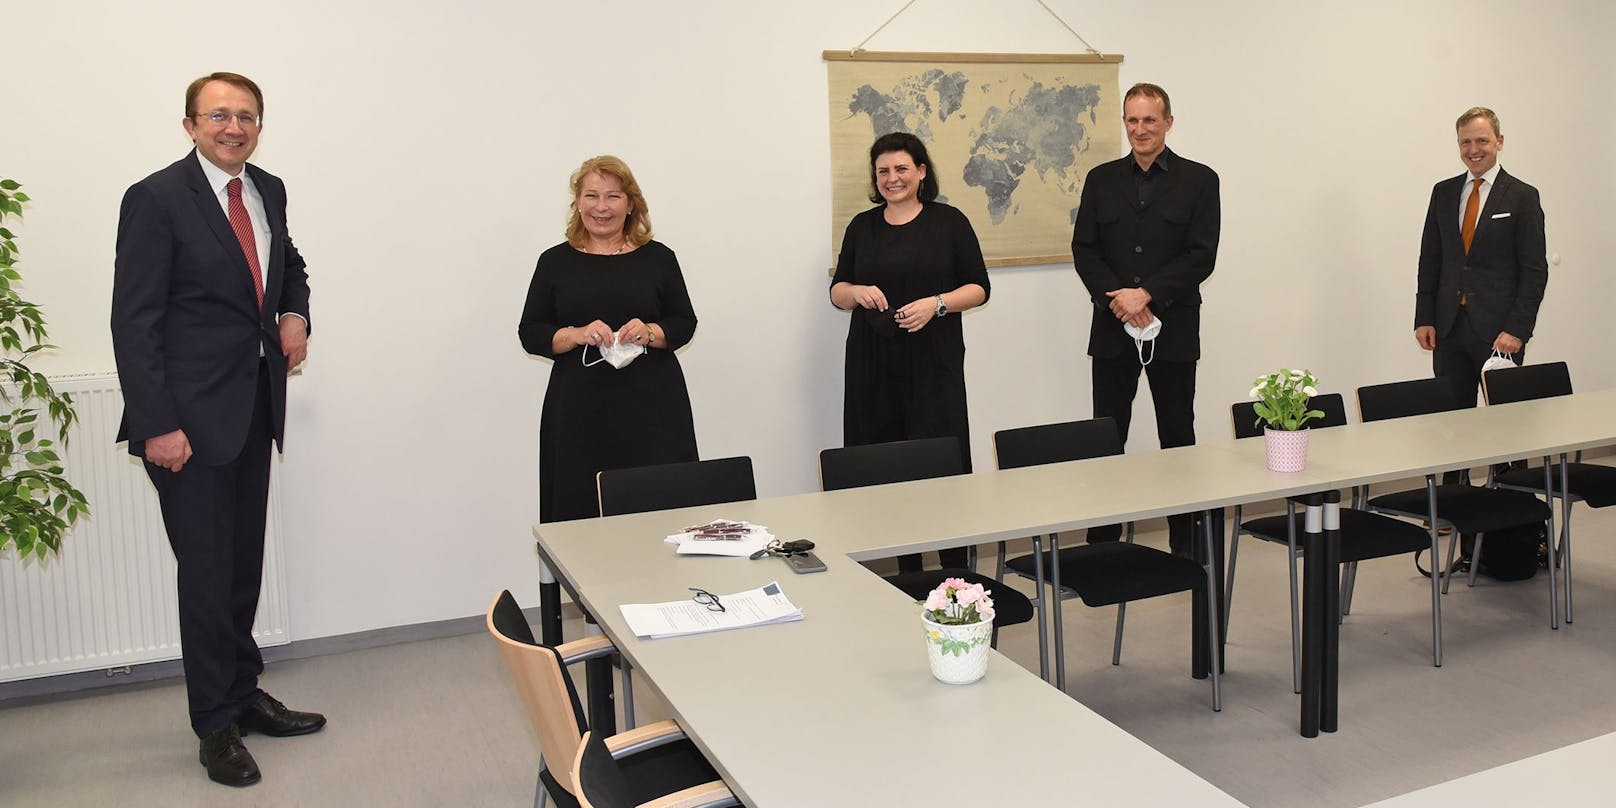 Matthias Stadler, Michaela Frank, Nina Räth, Herwig Eichenseder und Martin Koutny besprachen die künftige Zusammenarbeit.